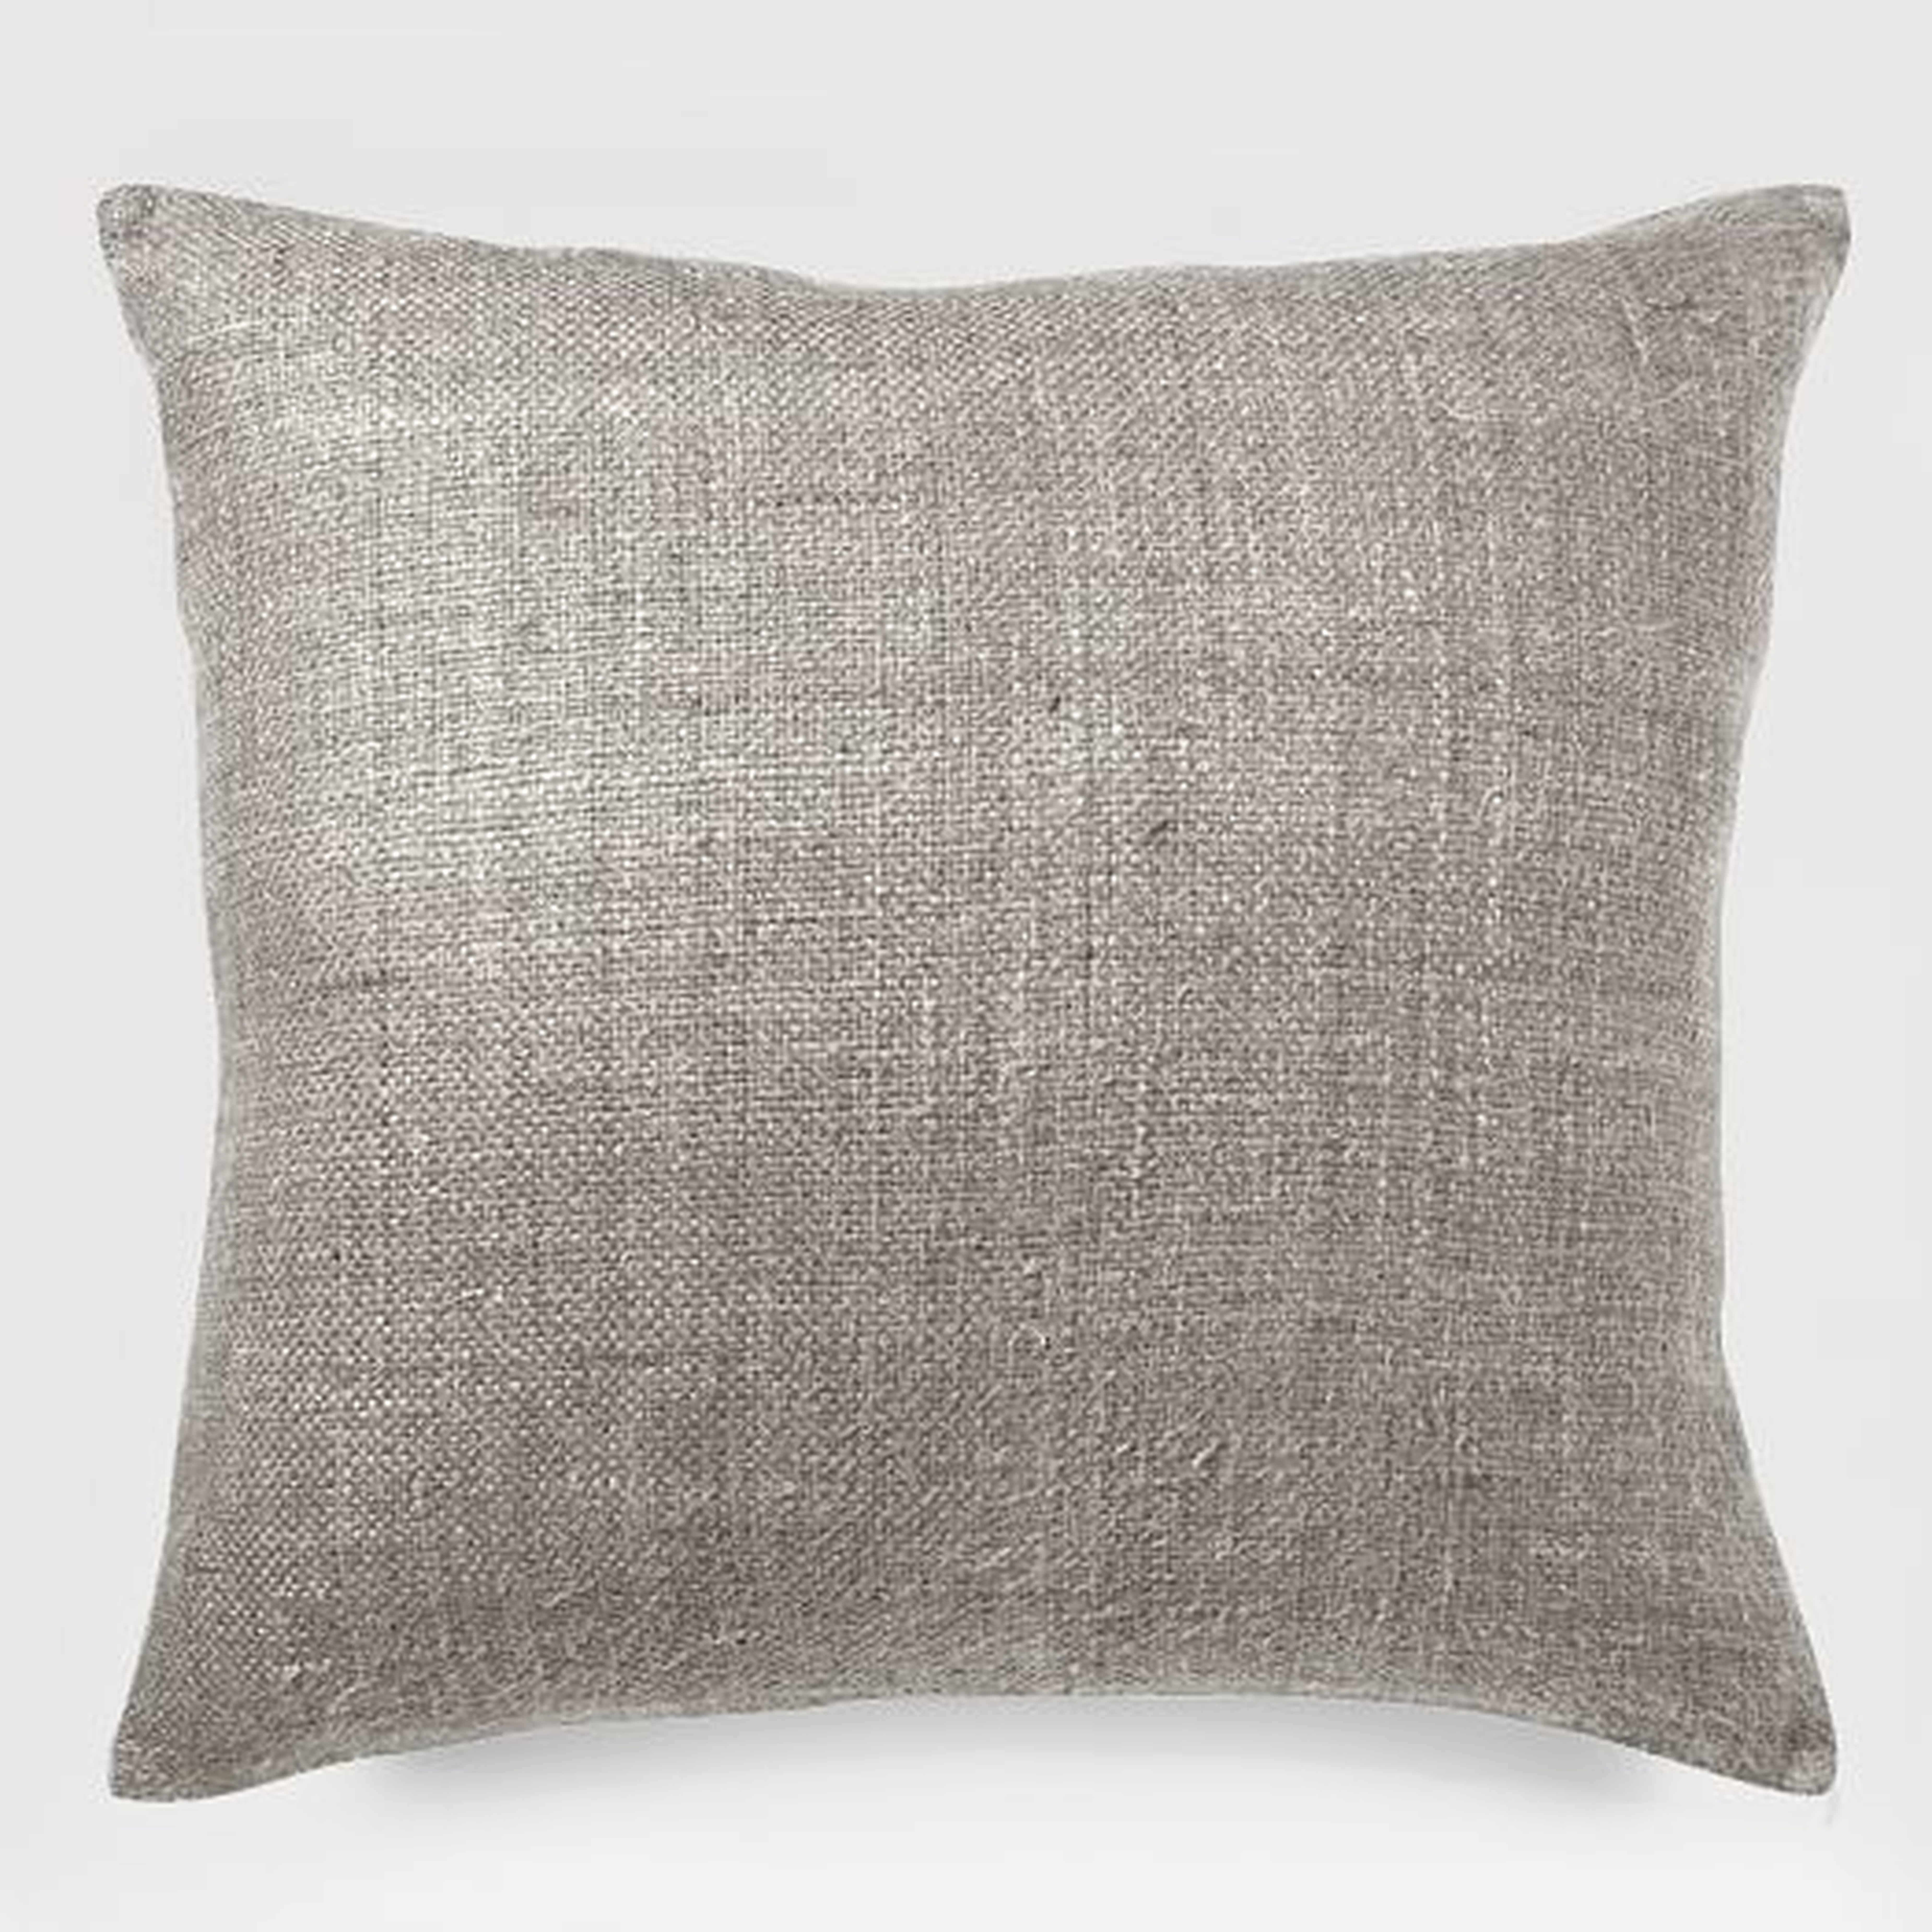 Silk Handloomed Pillow Cover, 20"x20", Platinum - West Elm